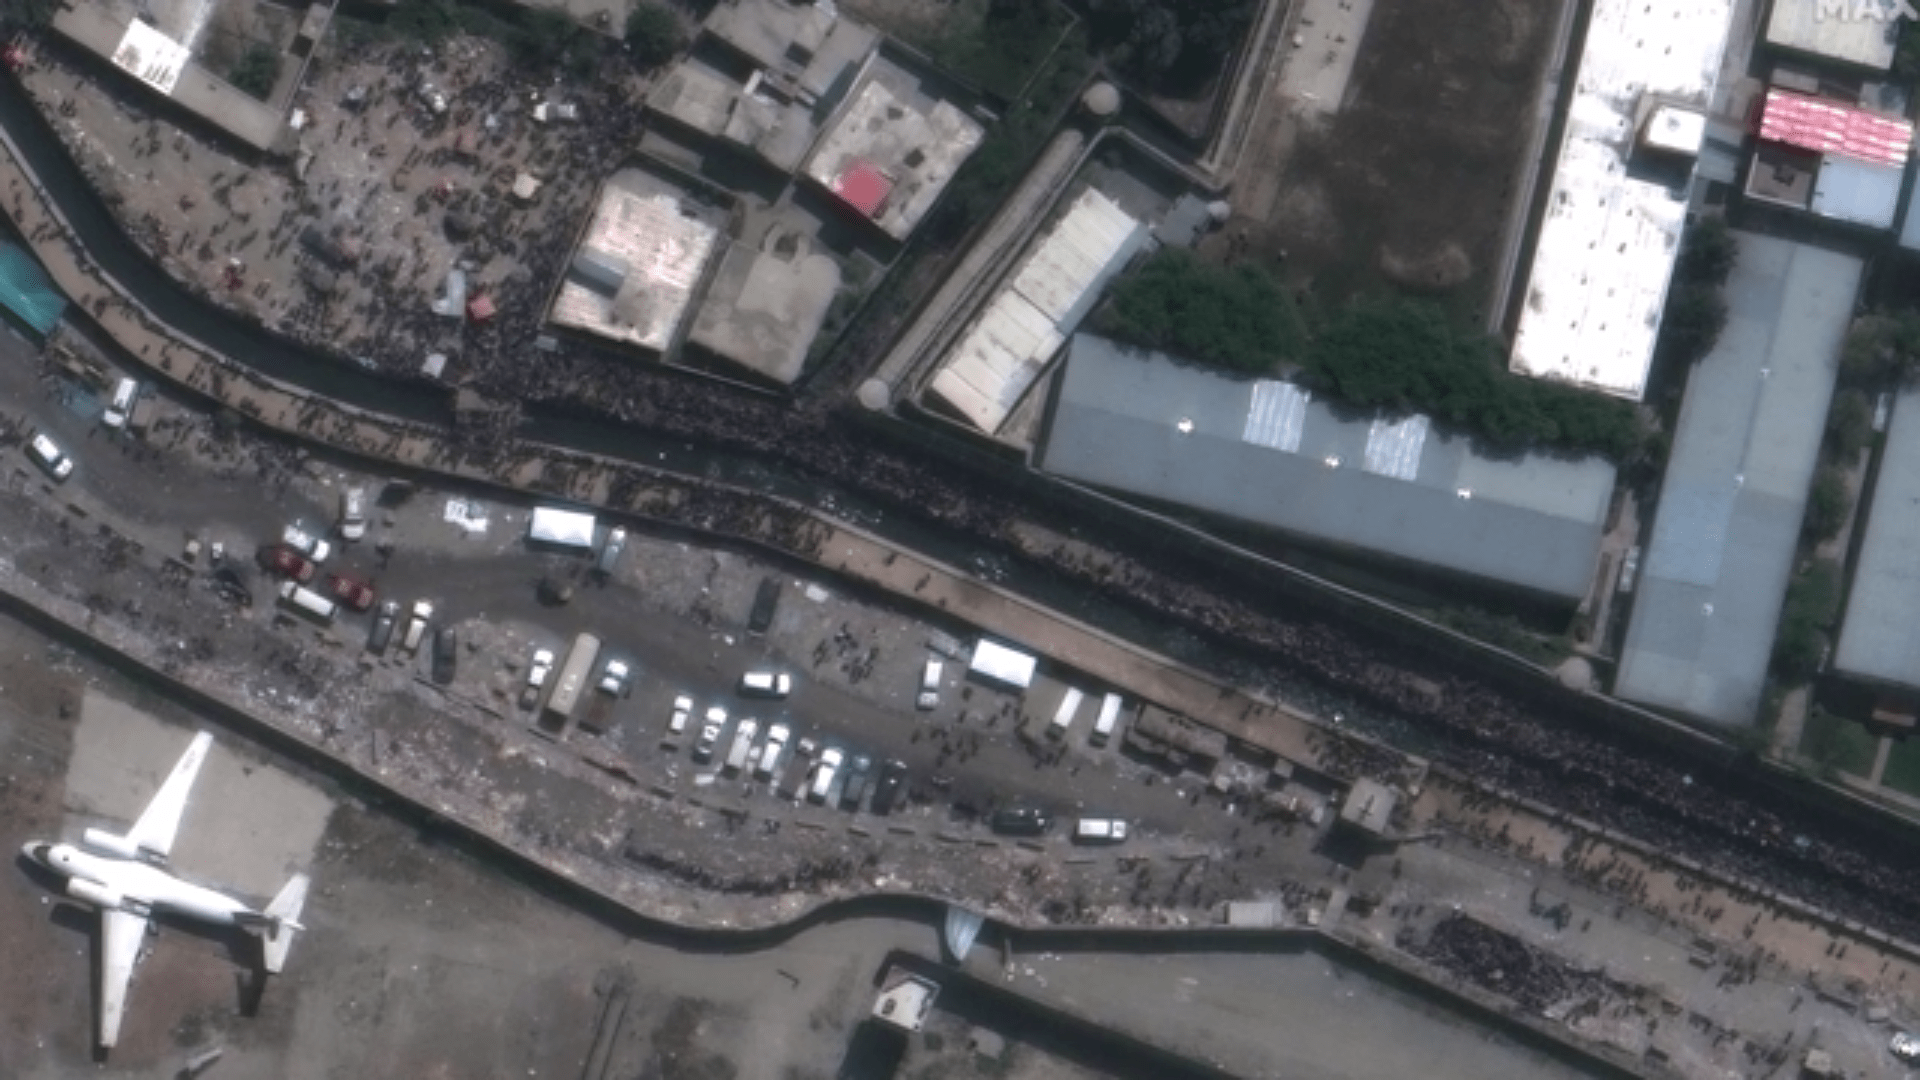 Satelitní snímky ukazují místo u kábulského letiště, kde za pár vteřin dojde k explozi.